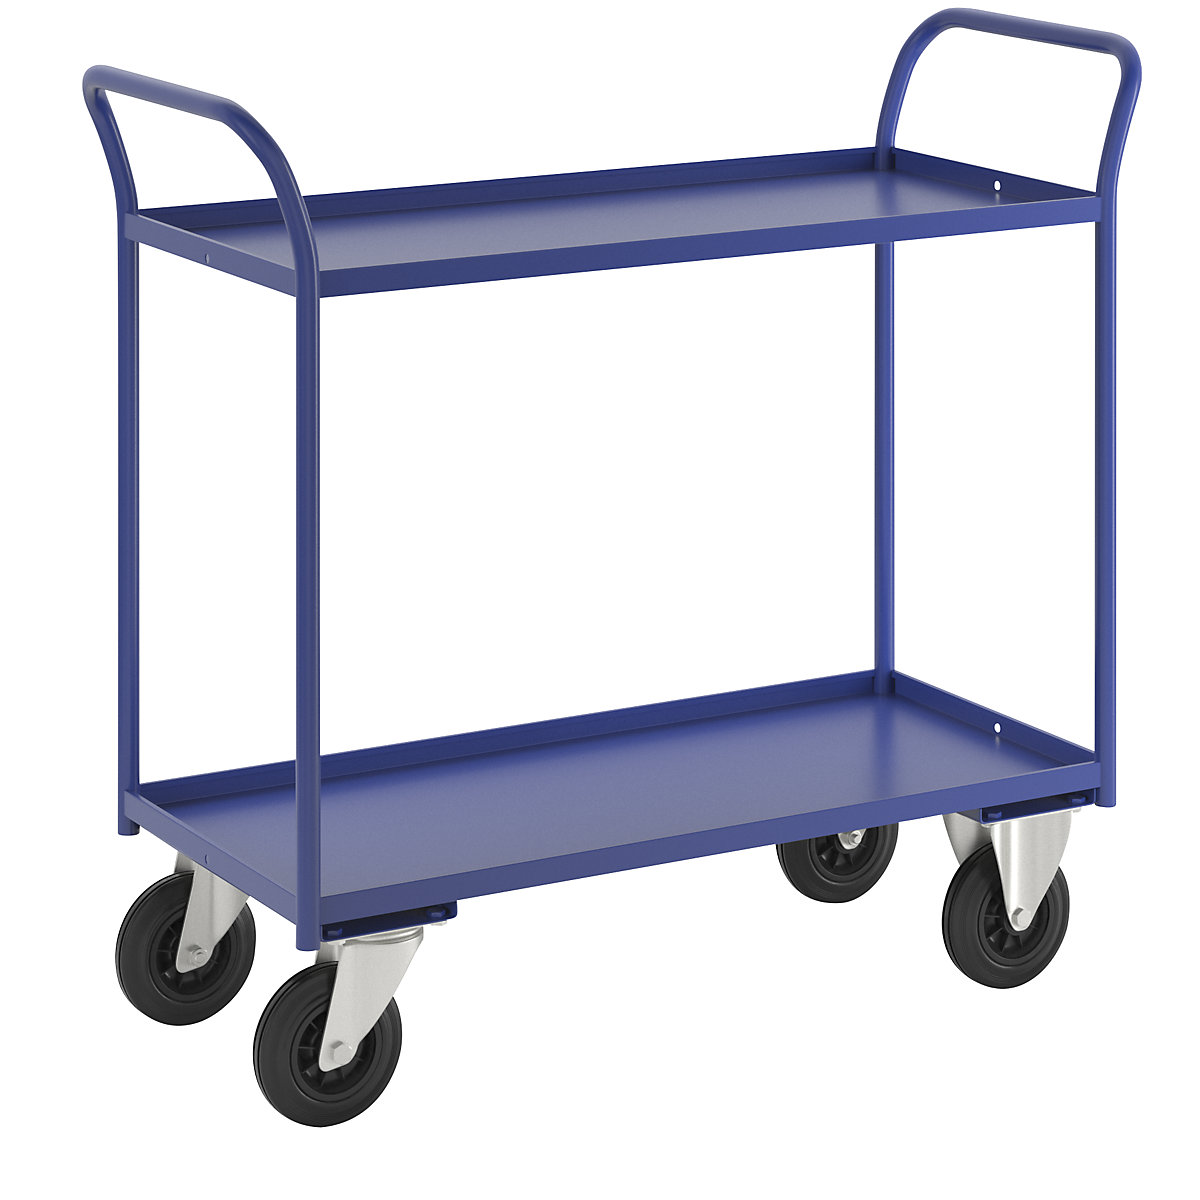 Stolový vozík KM41 – Kongamek, 2 poschodia s ohranením, d x š x v 1080 x 450 x 1000 mm, modrá, 2 otočné a 2 pevné kolieska-6